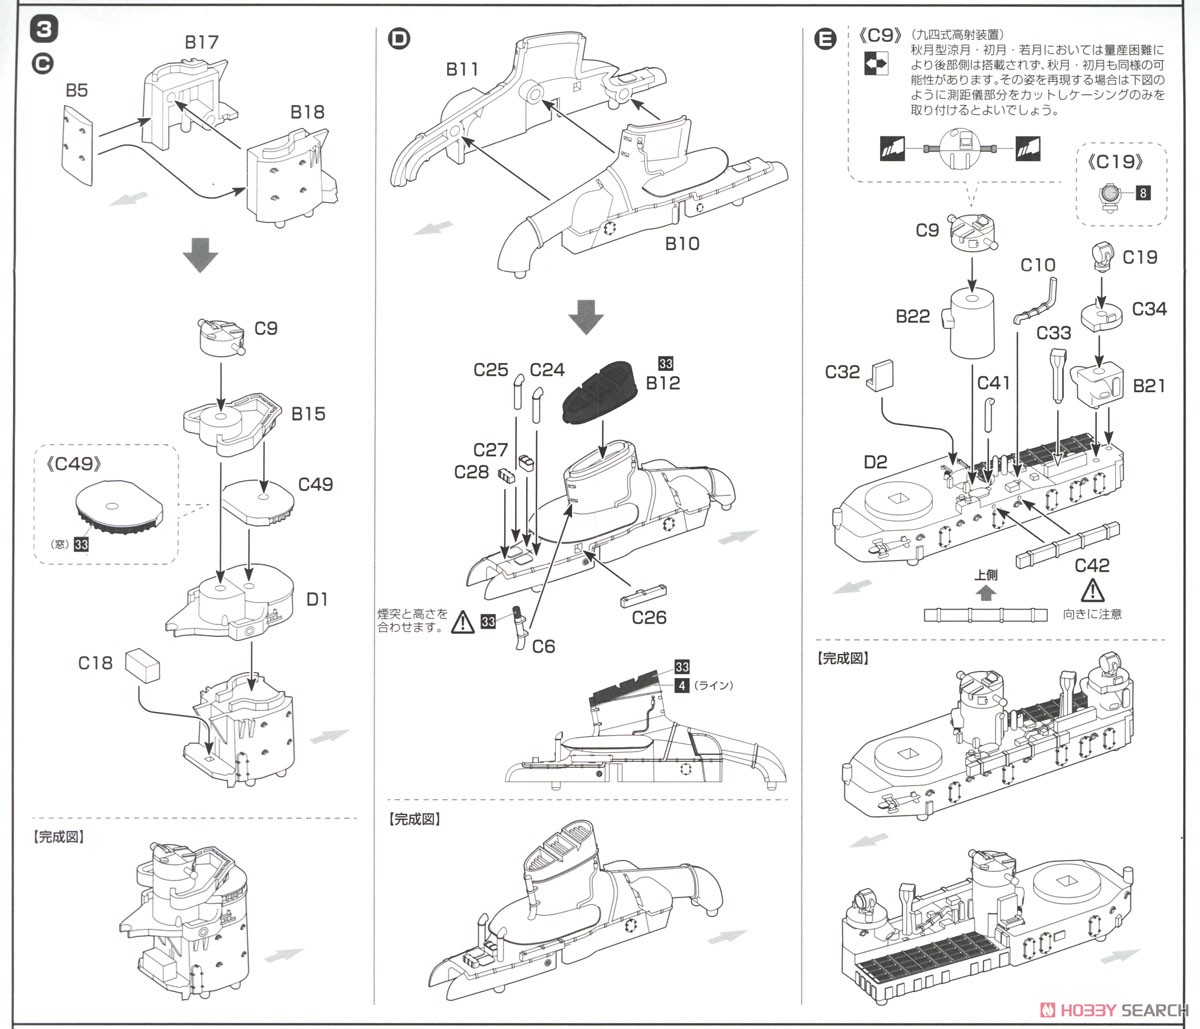 日本海軍駆逐艦 秋月 フルハルモデル (プラモデル) 設計図2